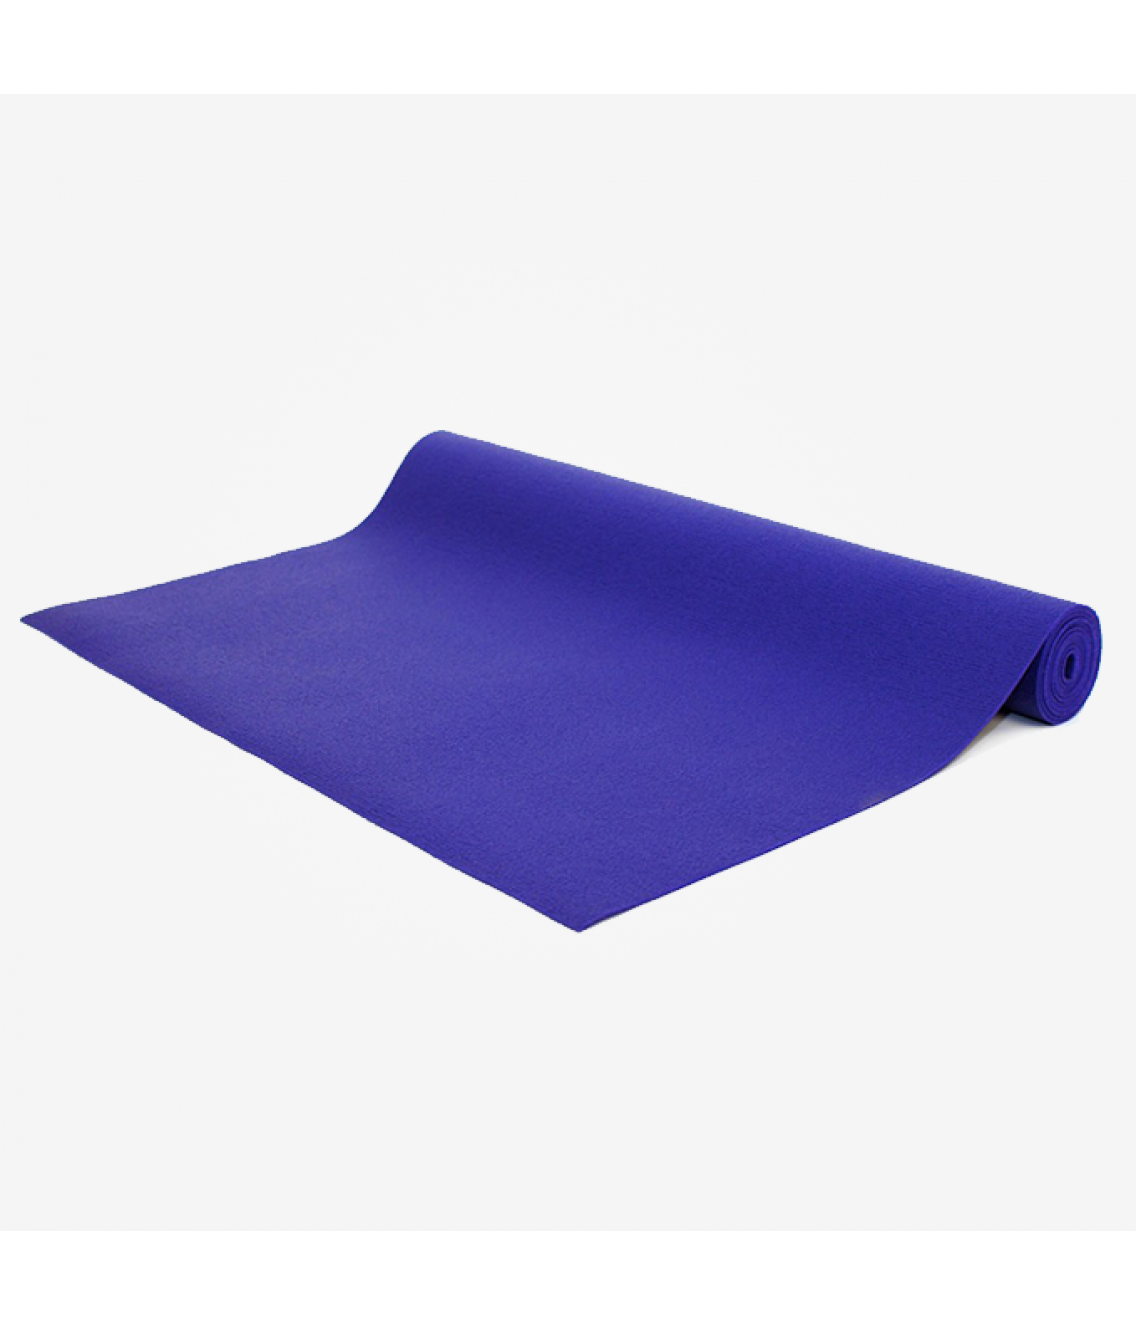 Коврик для йоги Bodhi Kailash 175см 60см 3мм фиолетовый